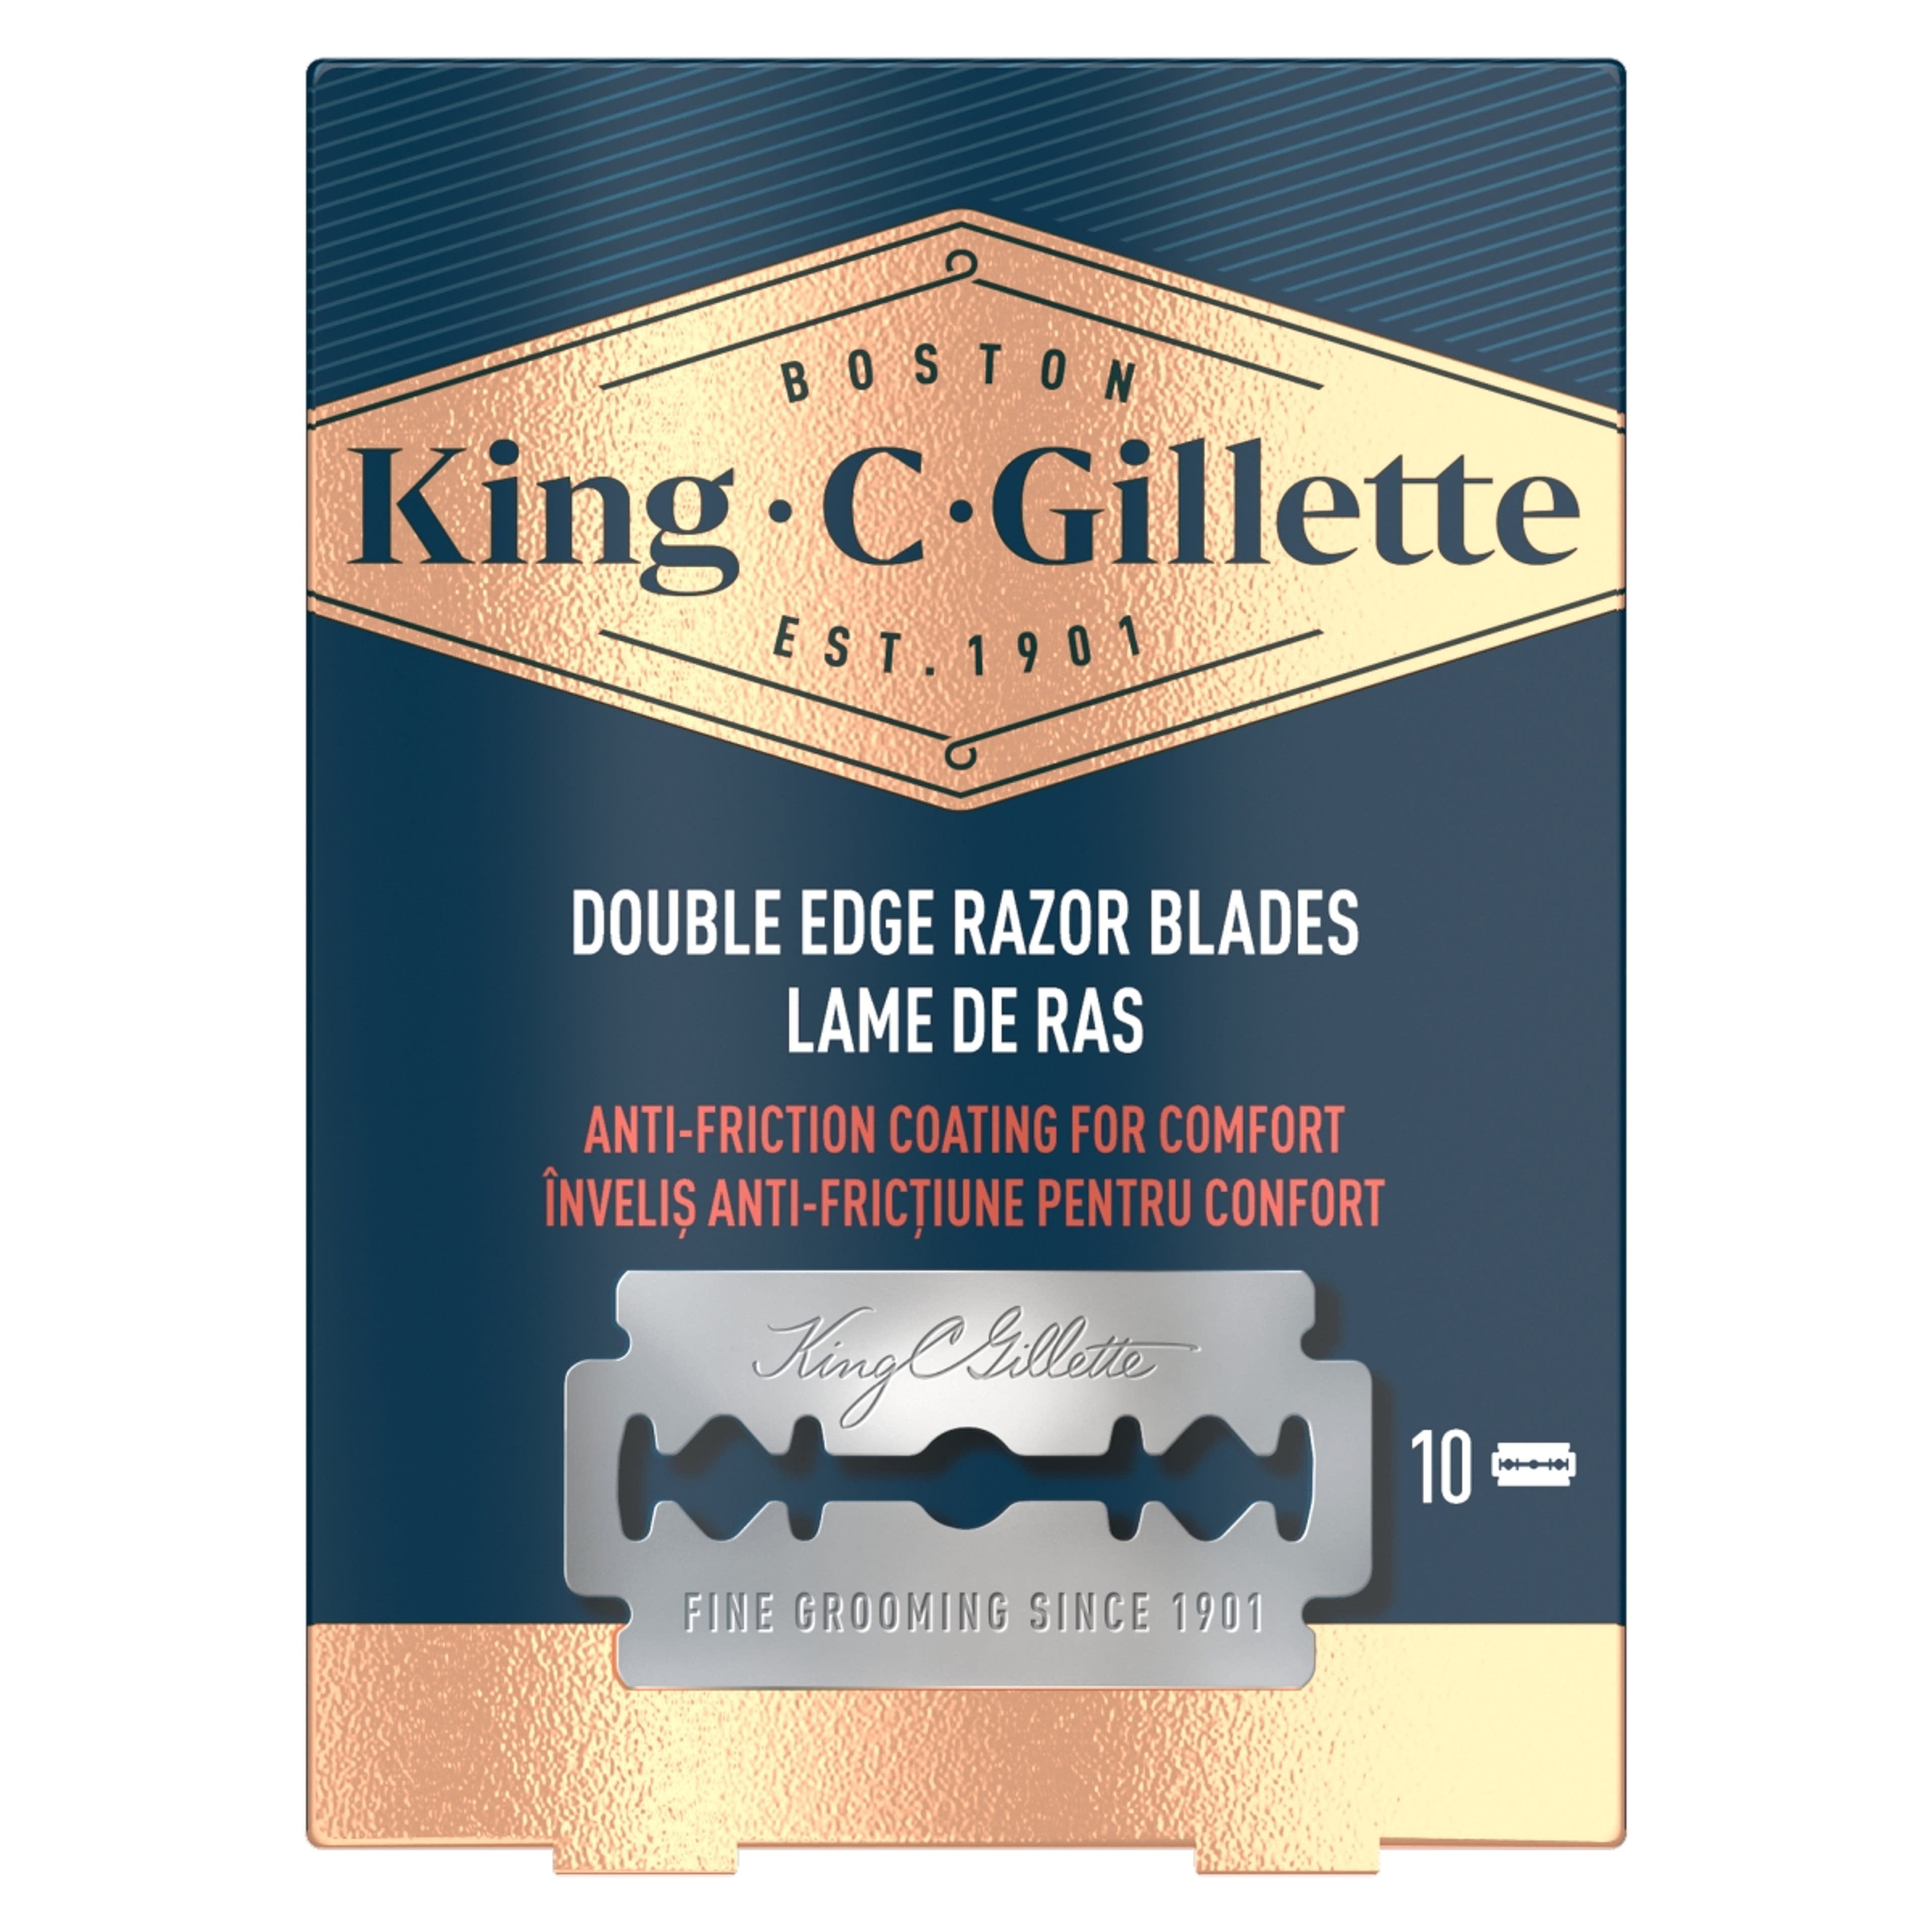 Gillette King C. Double Edge borotvabetét - 10 db